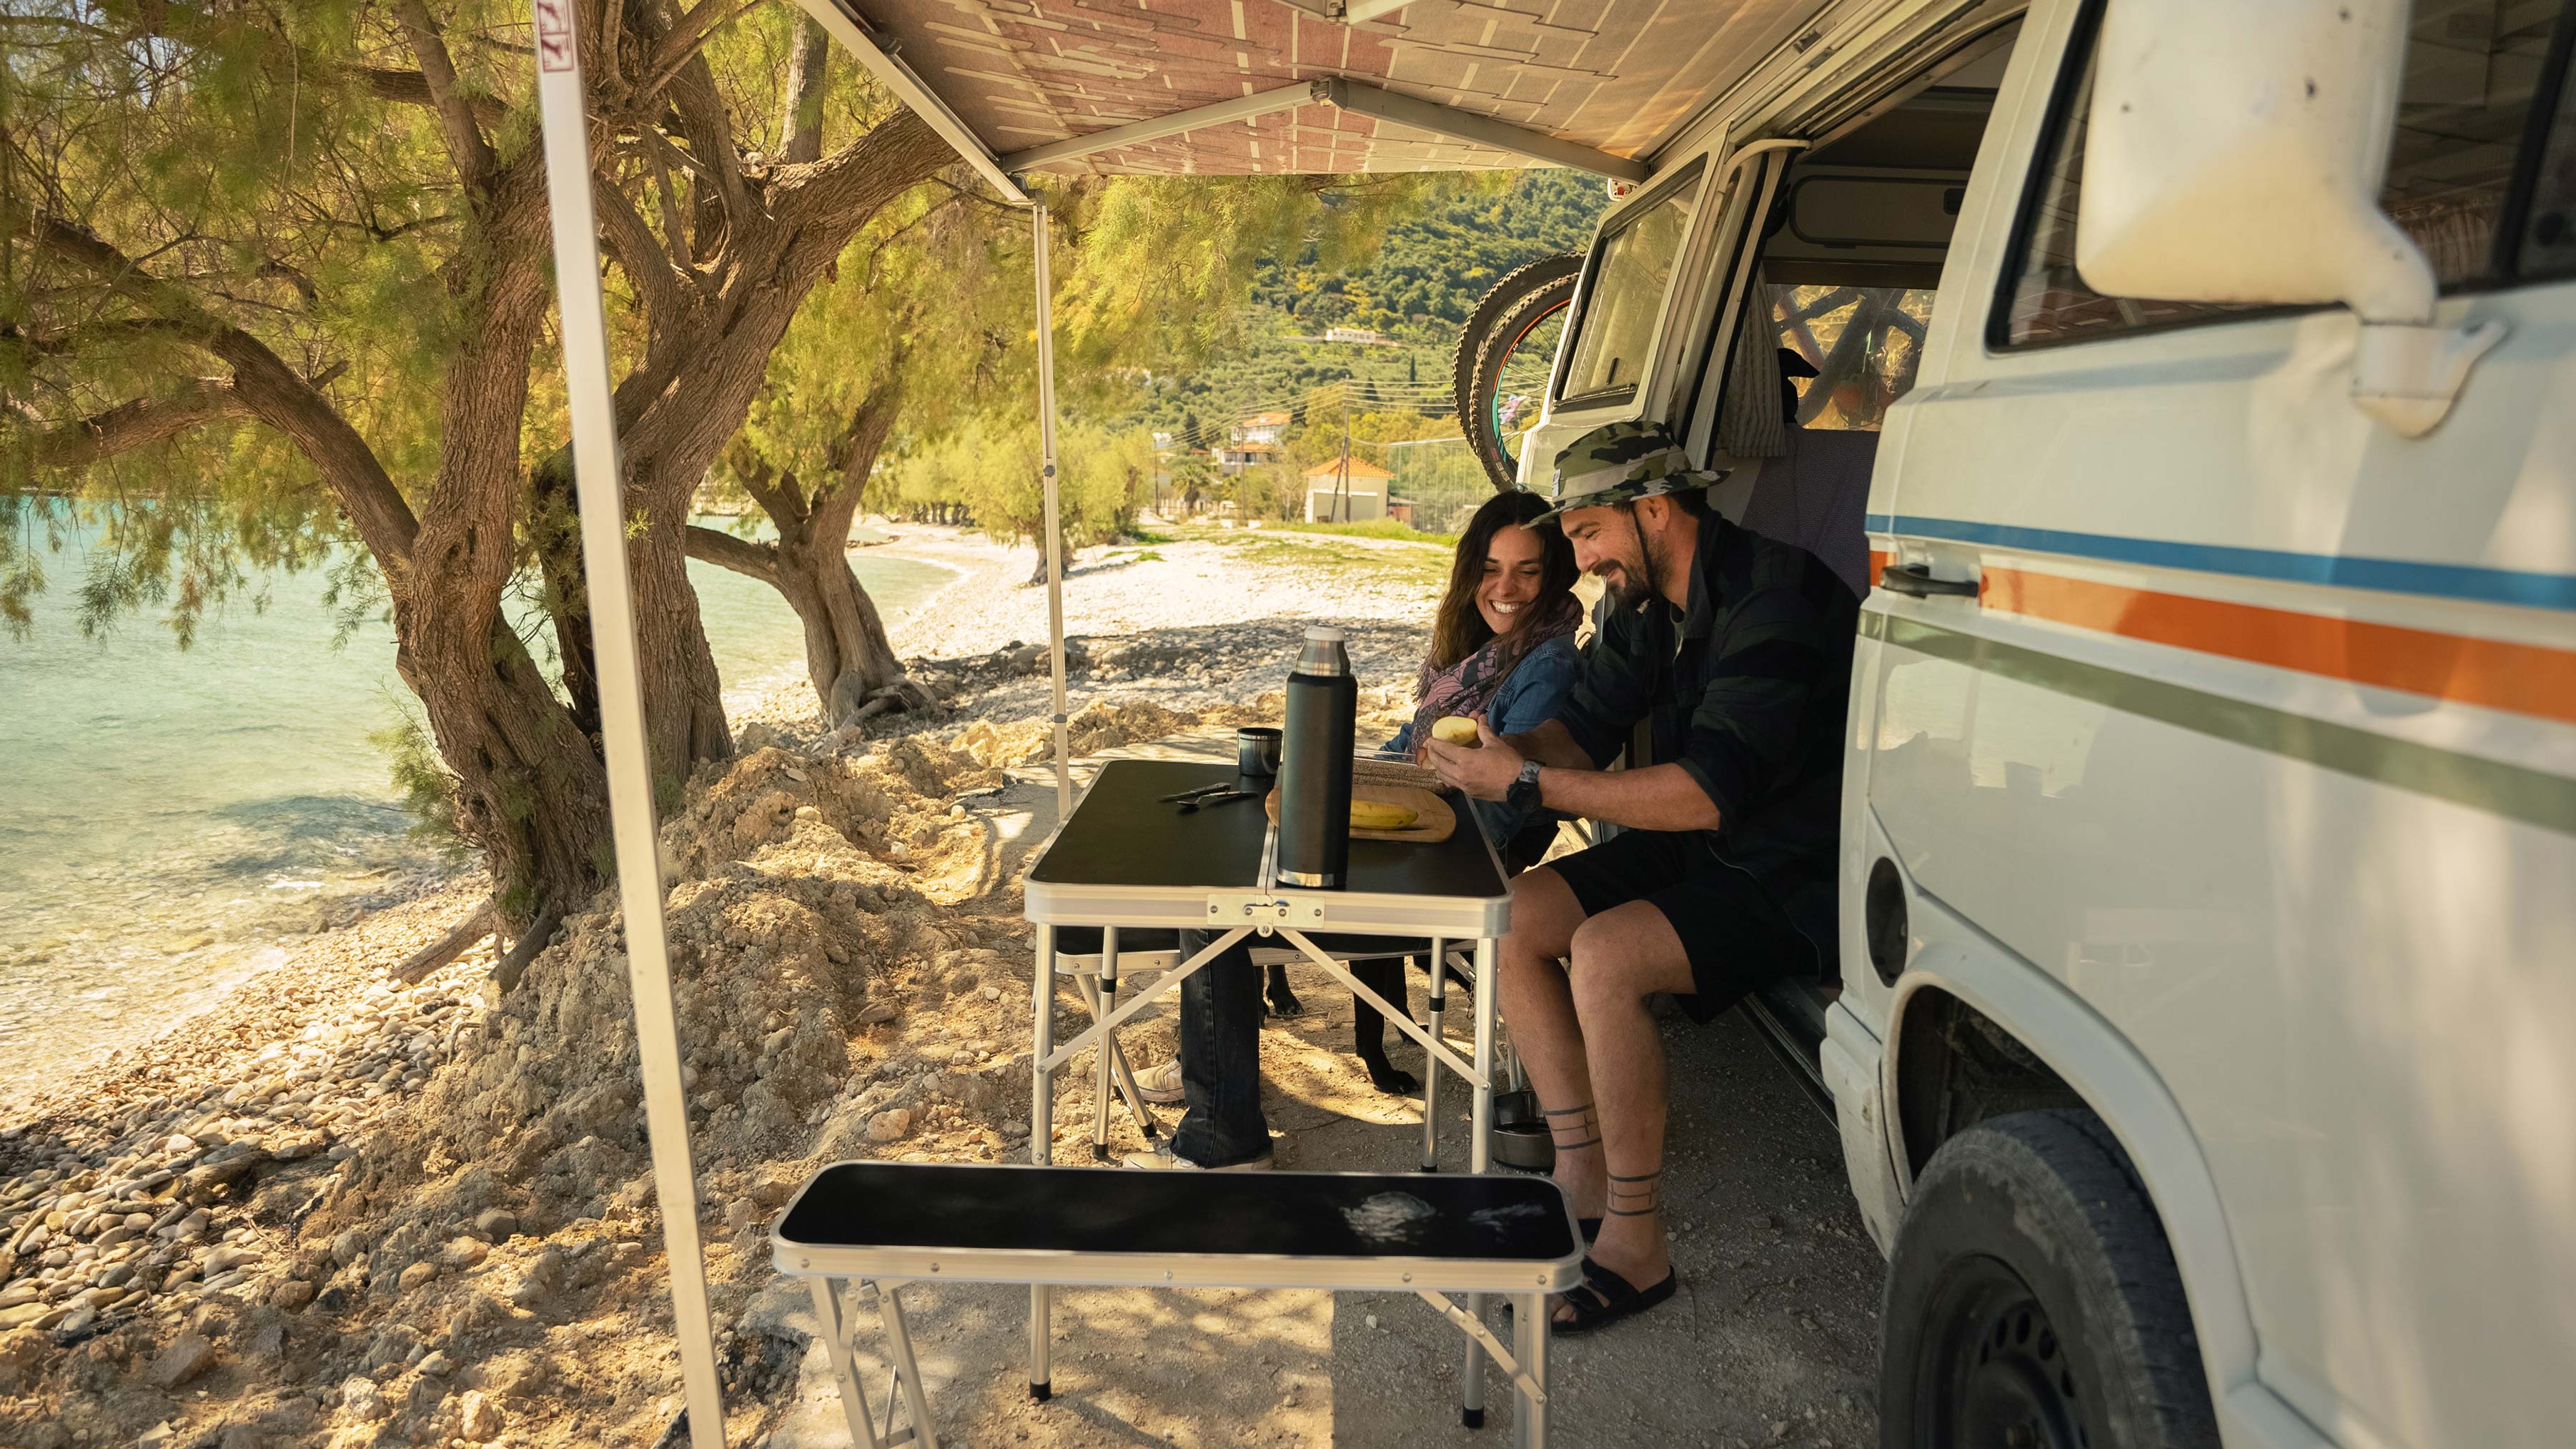 John et Eva préparant une collation dans leur van